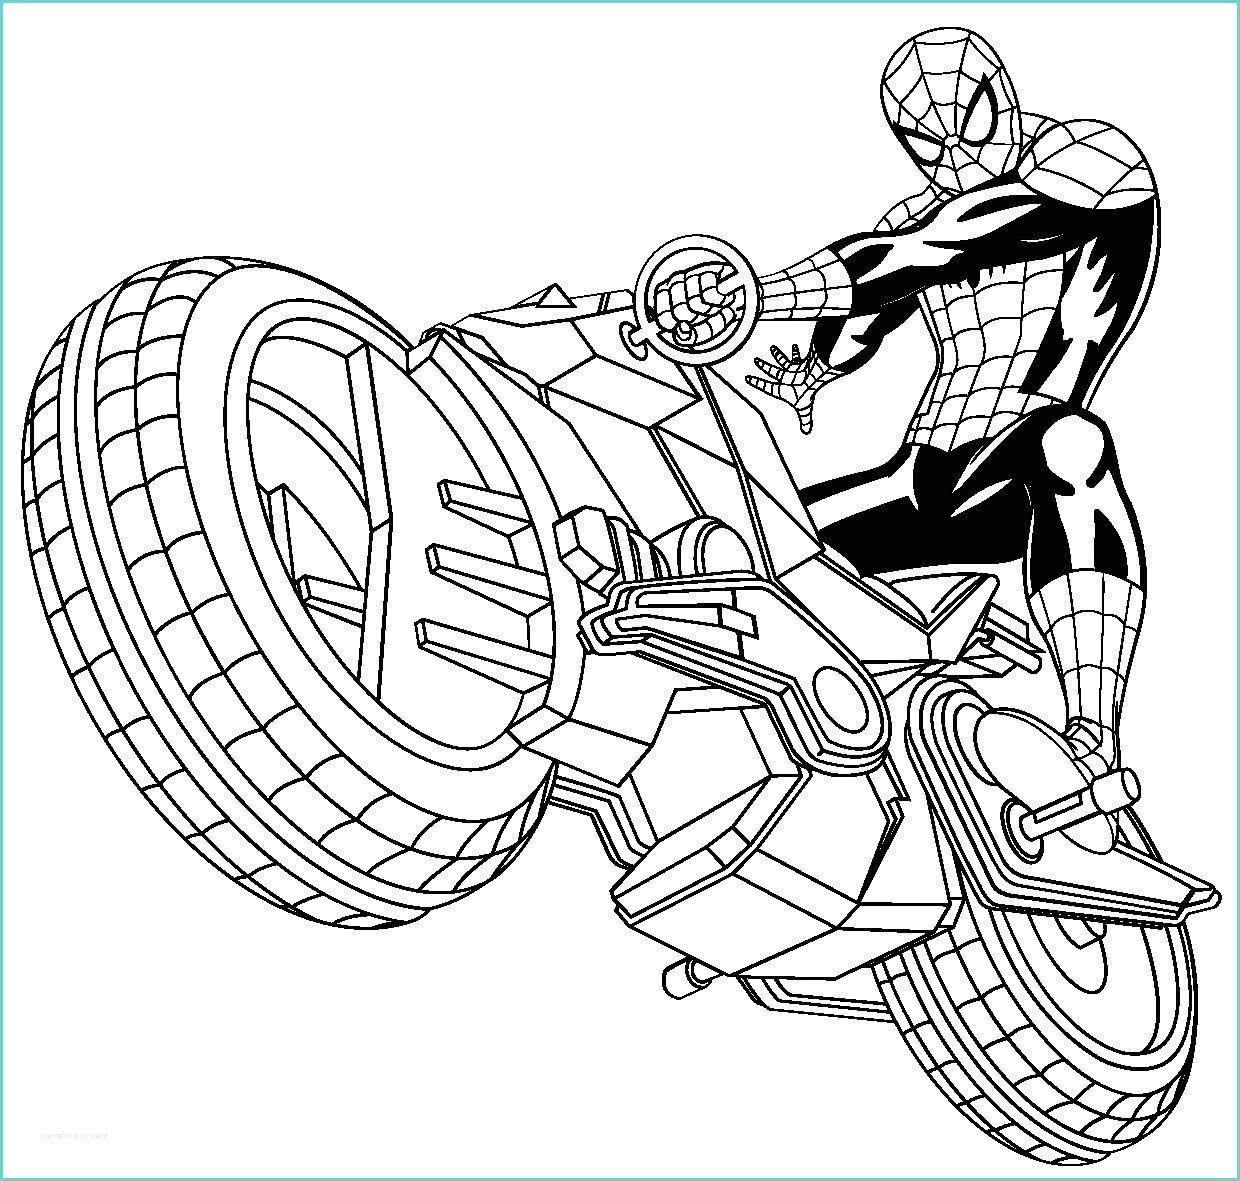 Immagini Di Spiderman Da Colorare Dessin De Coloriage Spiderman à Imprimer Cp